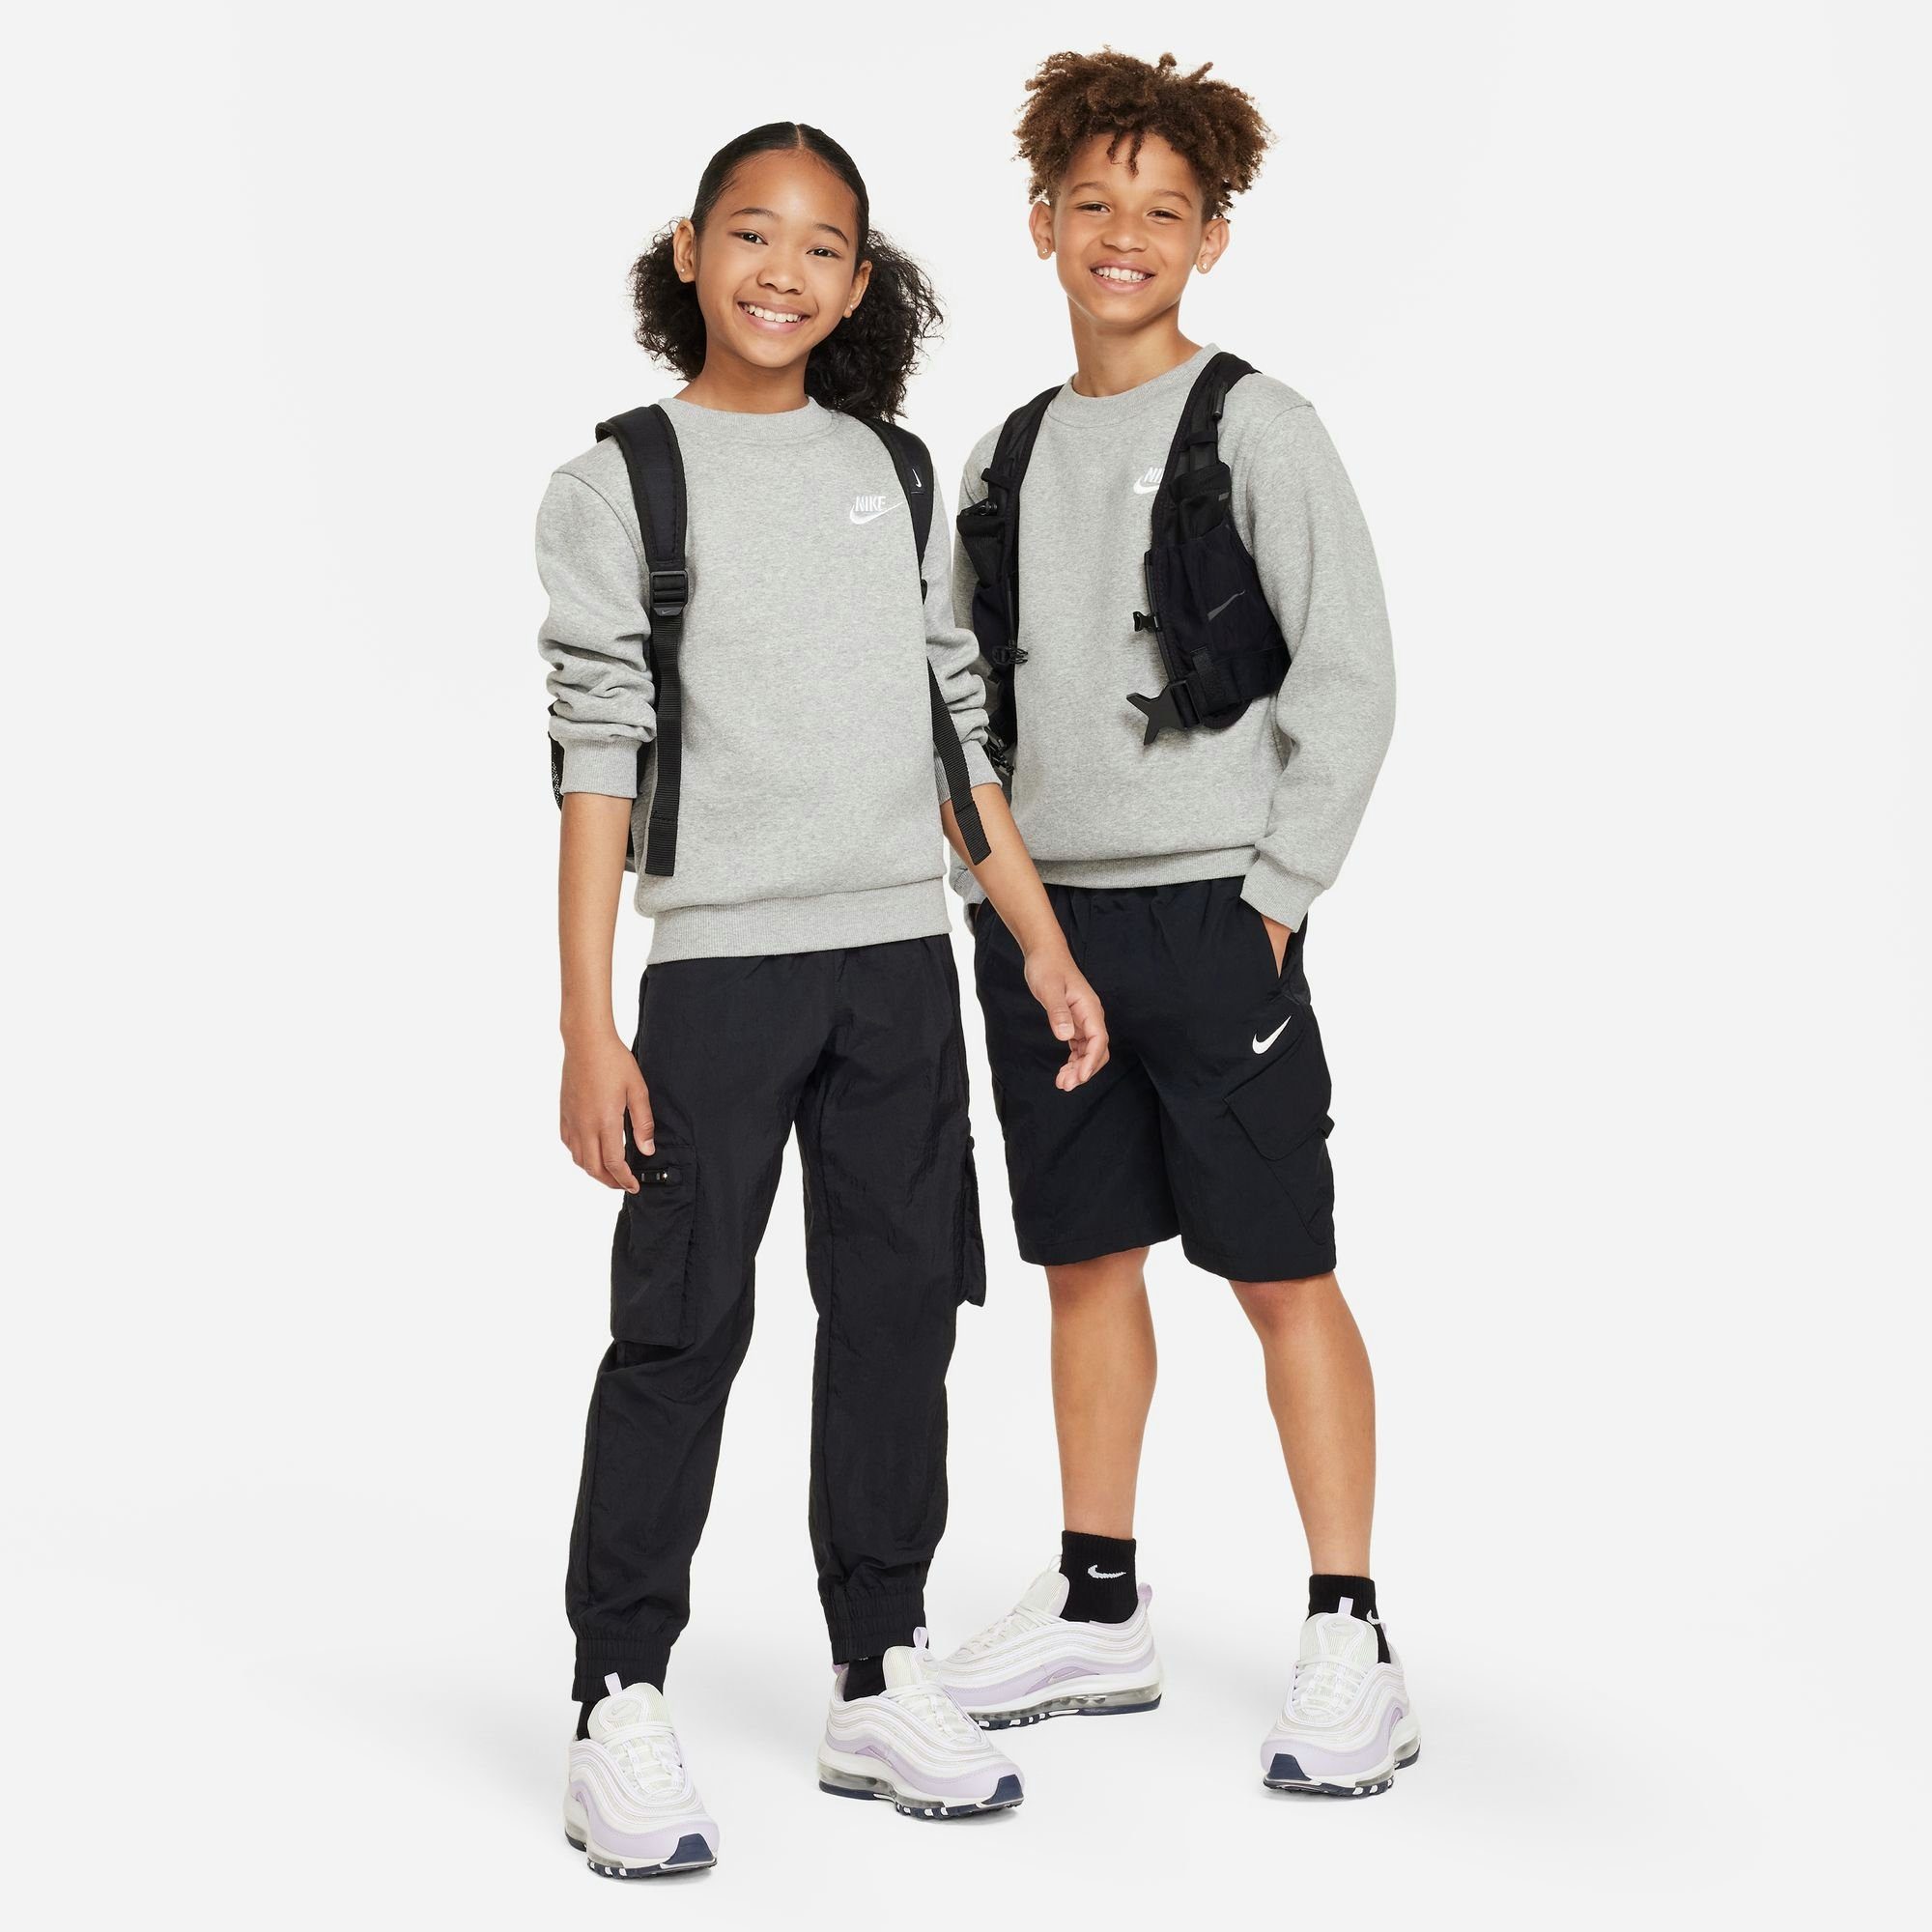 SWEATSHIRT Nike FLEECE HEATHER/WHITE Sweatshirt BIG DK GREY KIDS' CLUB Sportswear